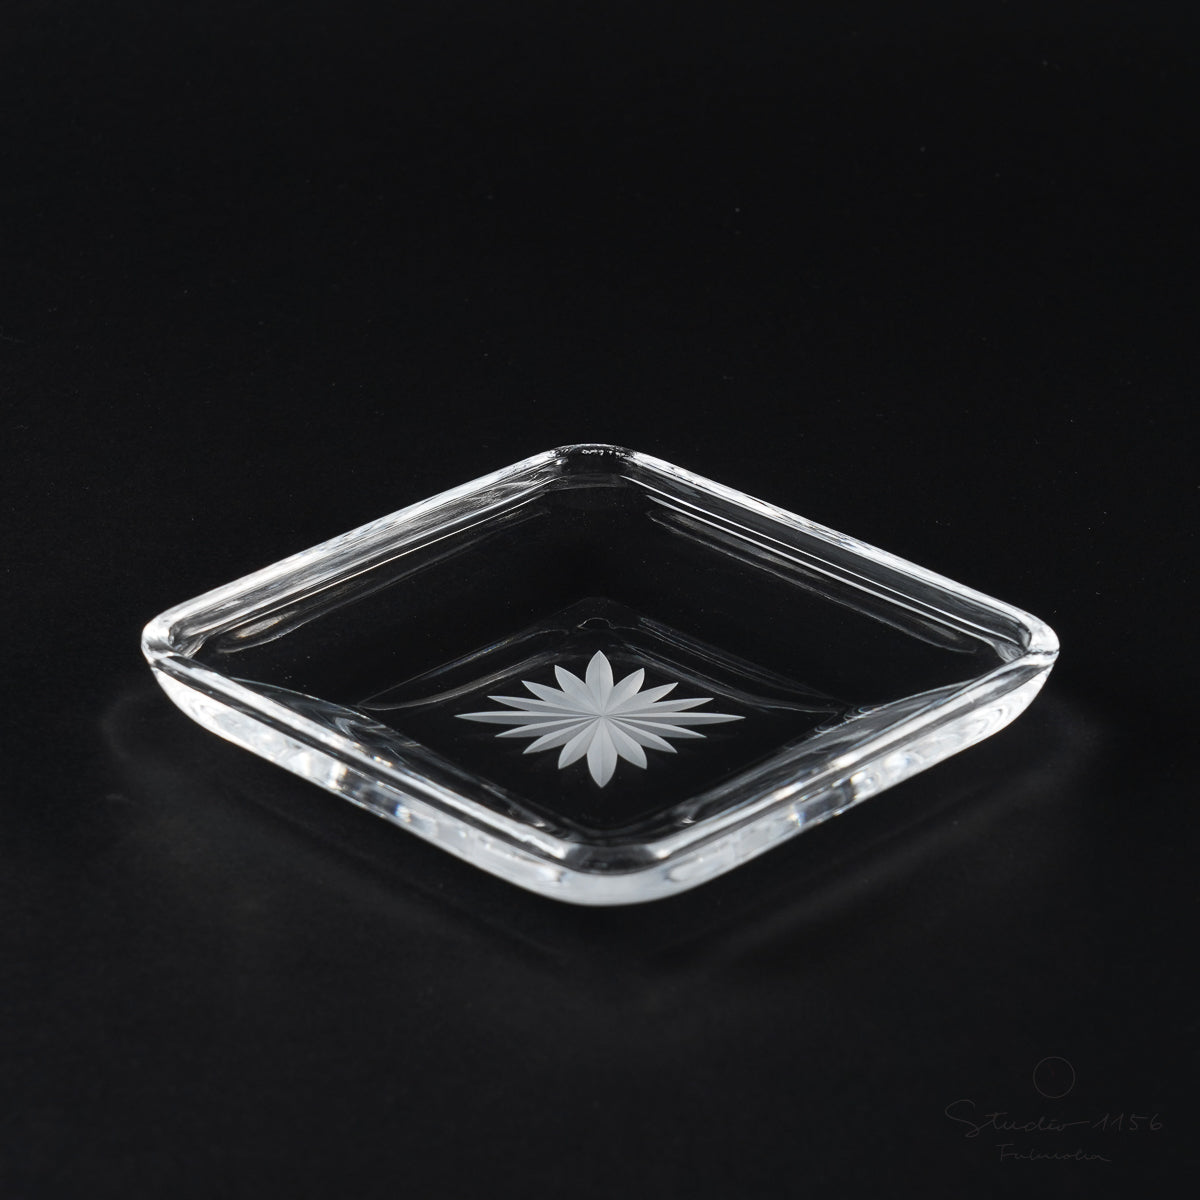 ガラス食器 セミクリスタル 切子ハンドカット 底菊 角皿 11cm [廃番特価品] Yoshinuma-glass Studio1156